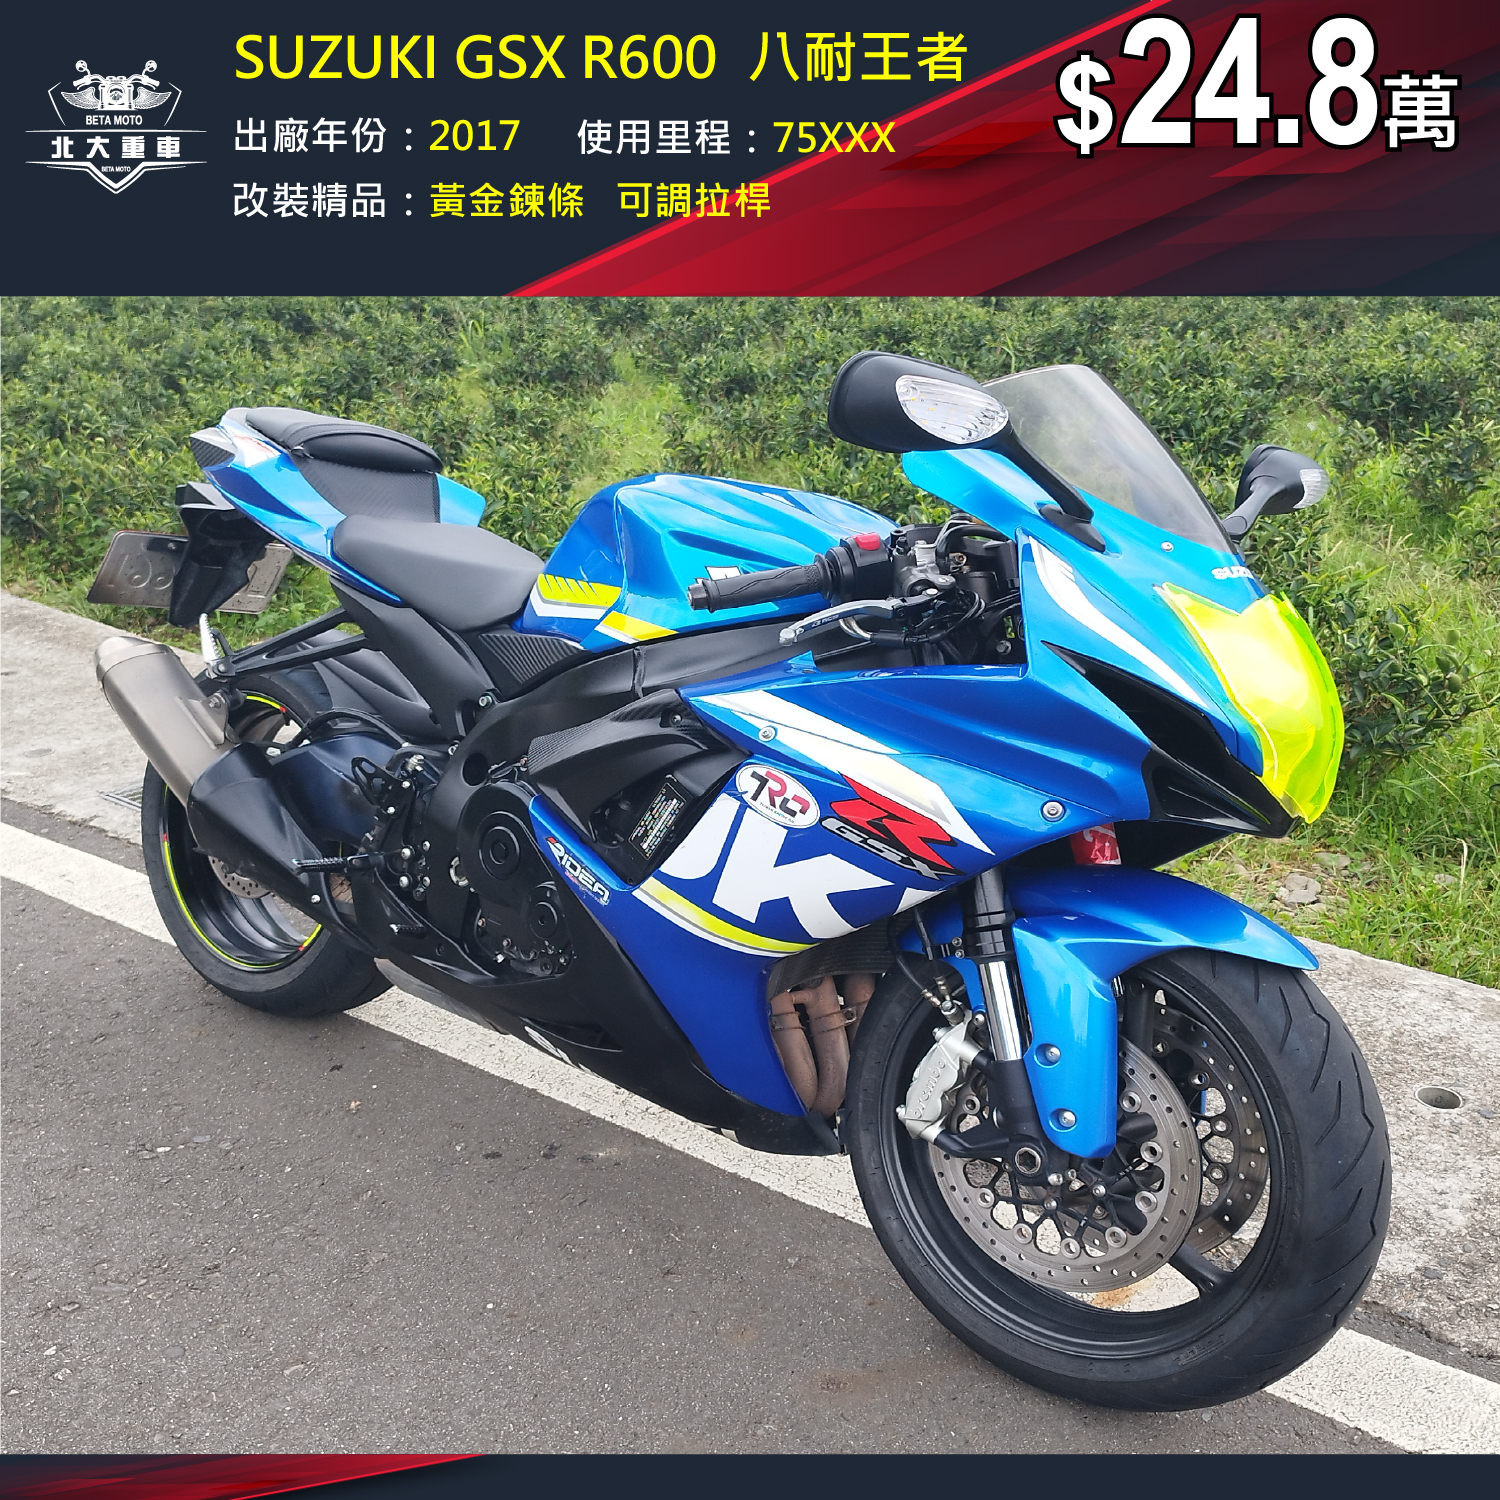 【北大重車】SUZUKI GSX-R600 - 「Webike-摩托車市」 SUZUKI GSX R600  八耐王者